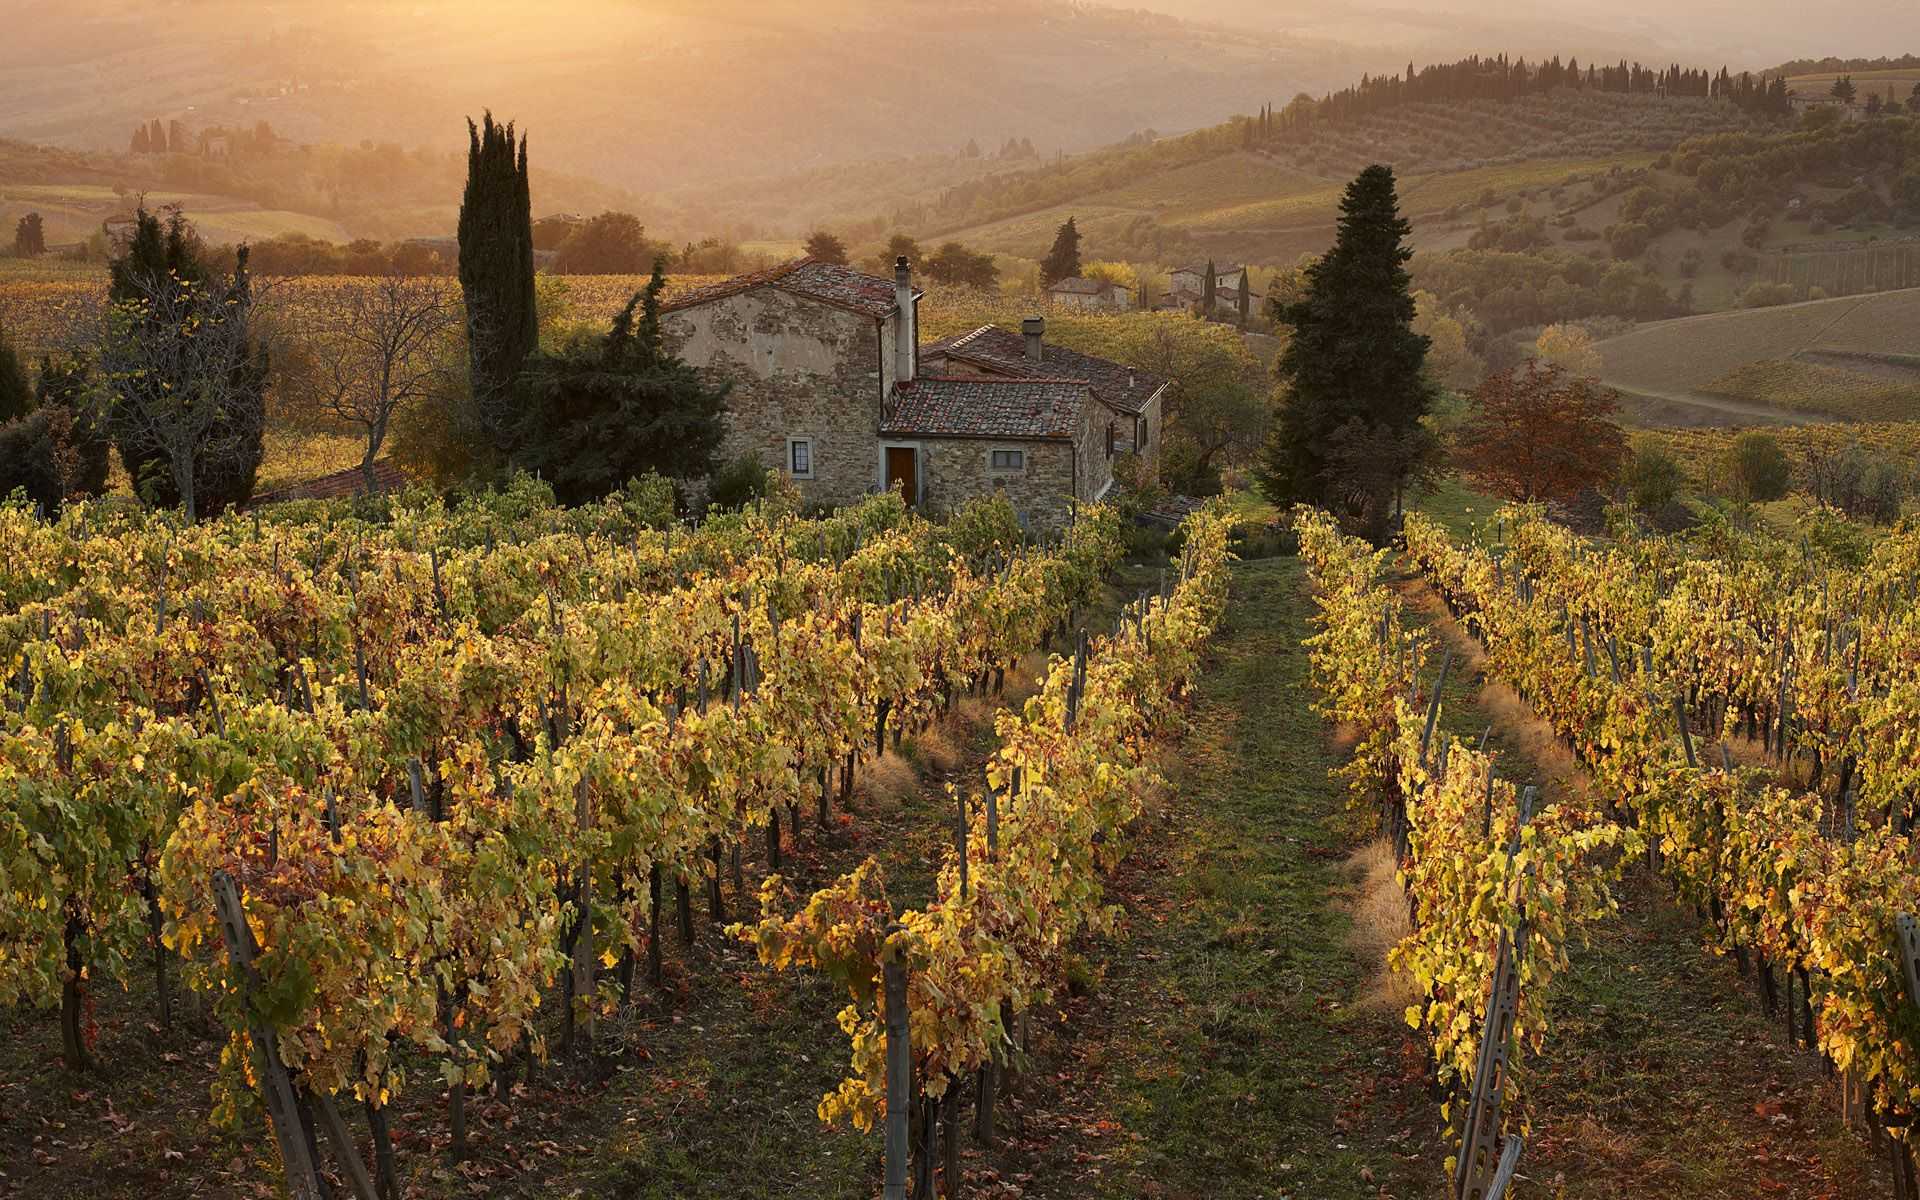 Винодельческие фермы тосканы: отдых у виноградной лозы | италия для италоманов